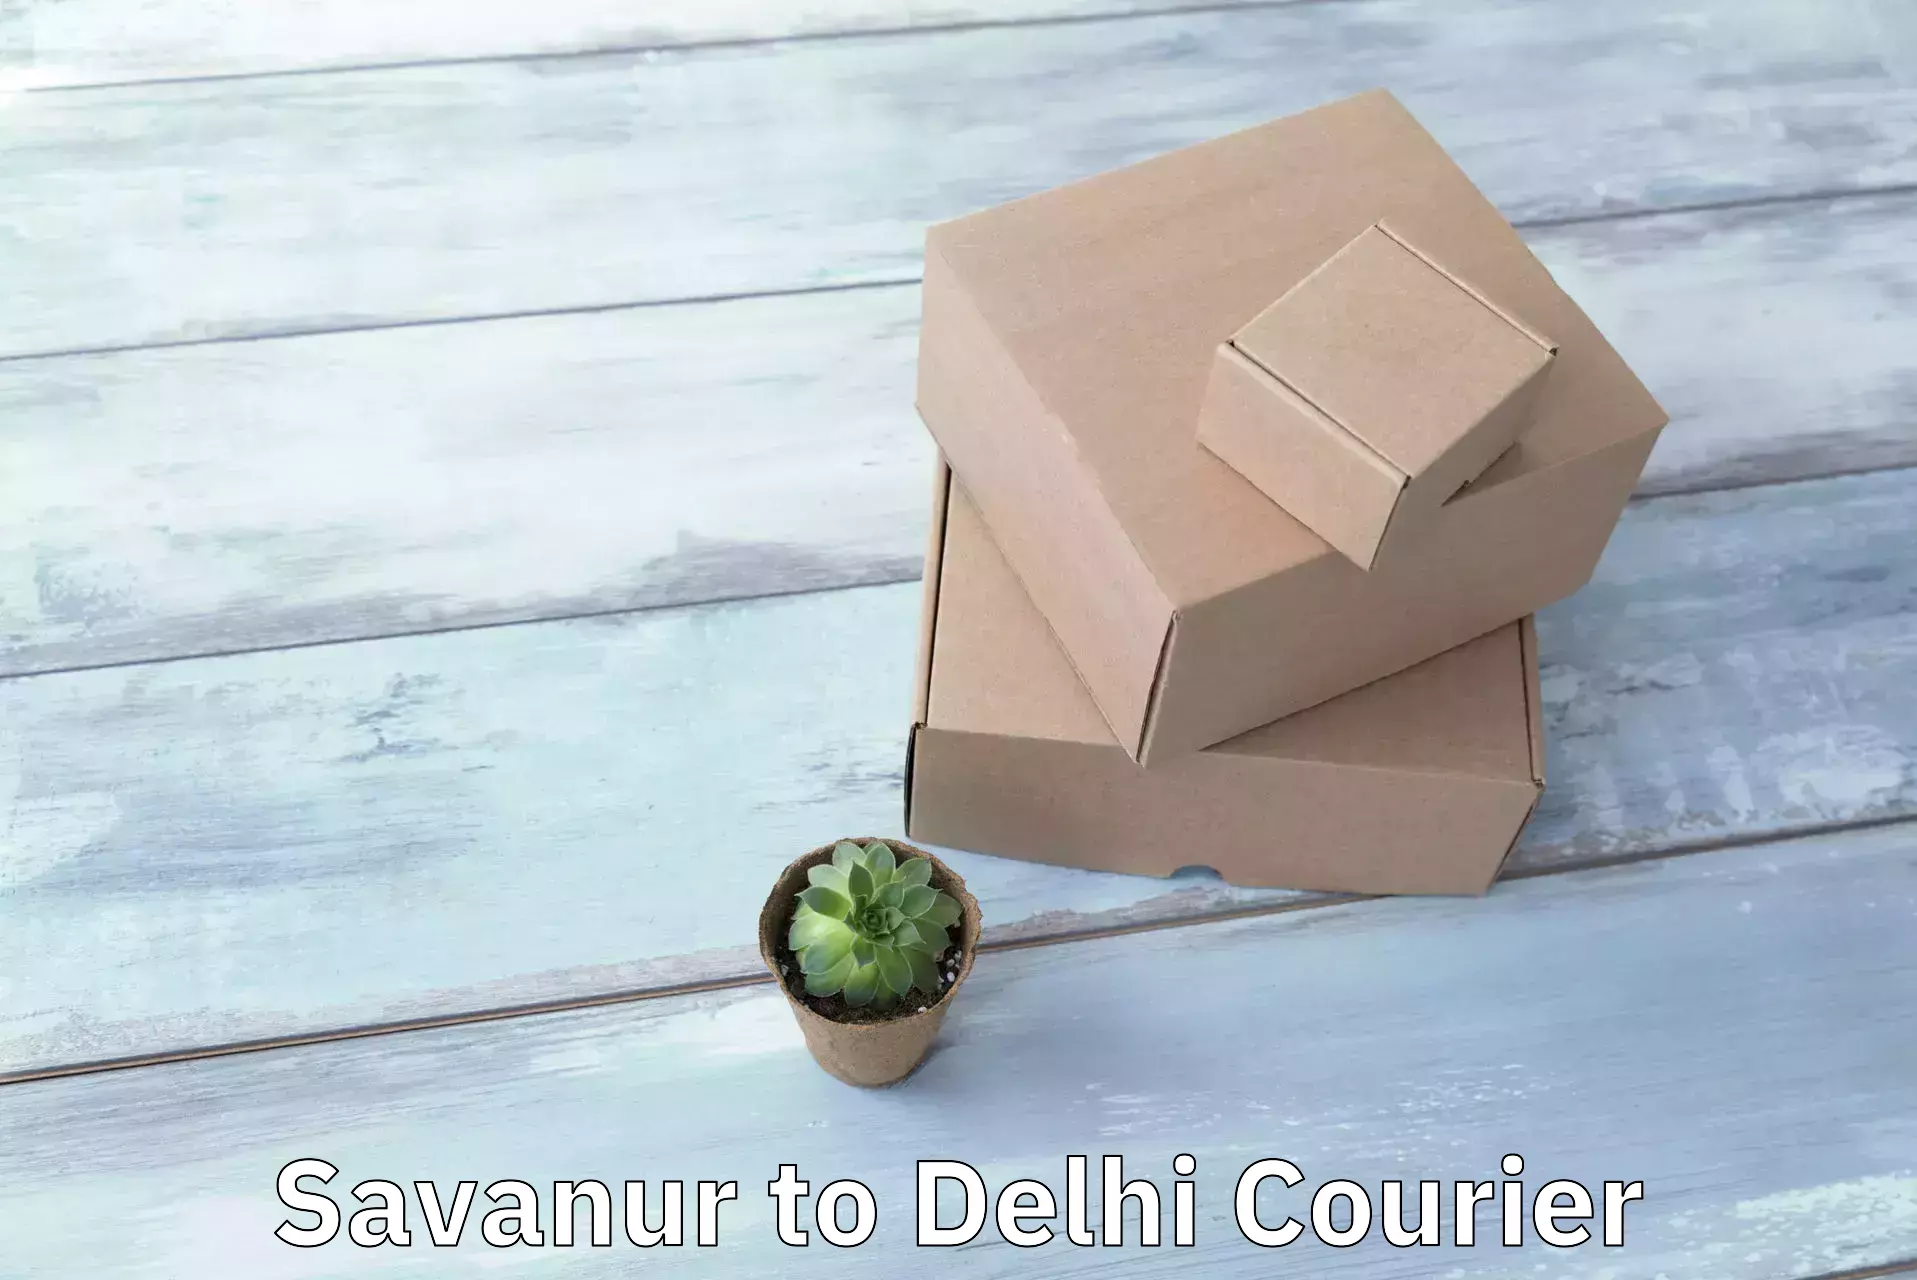 Courier service comparison Savanur to Subhash Nagar